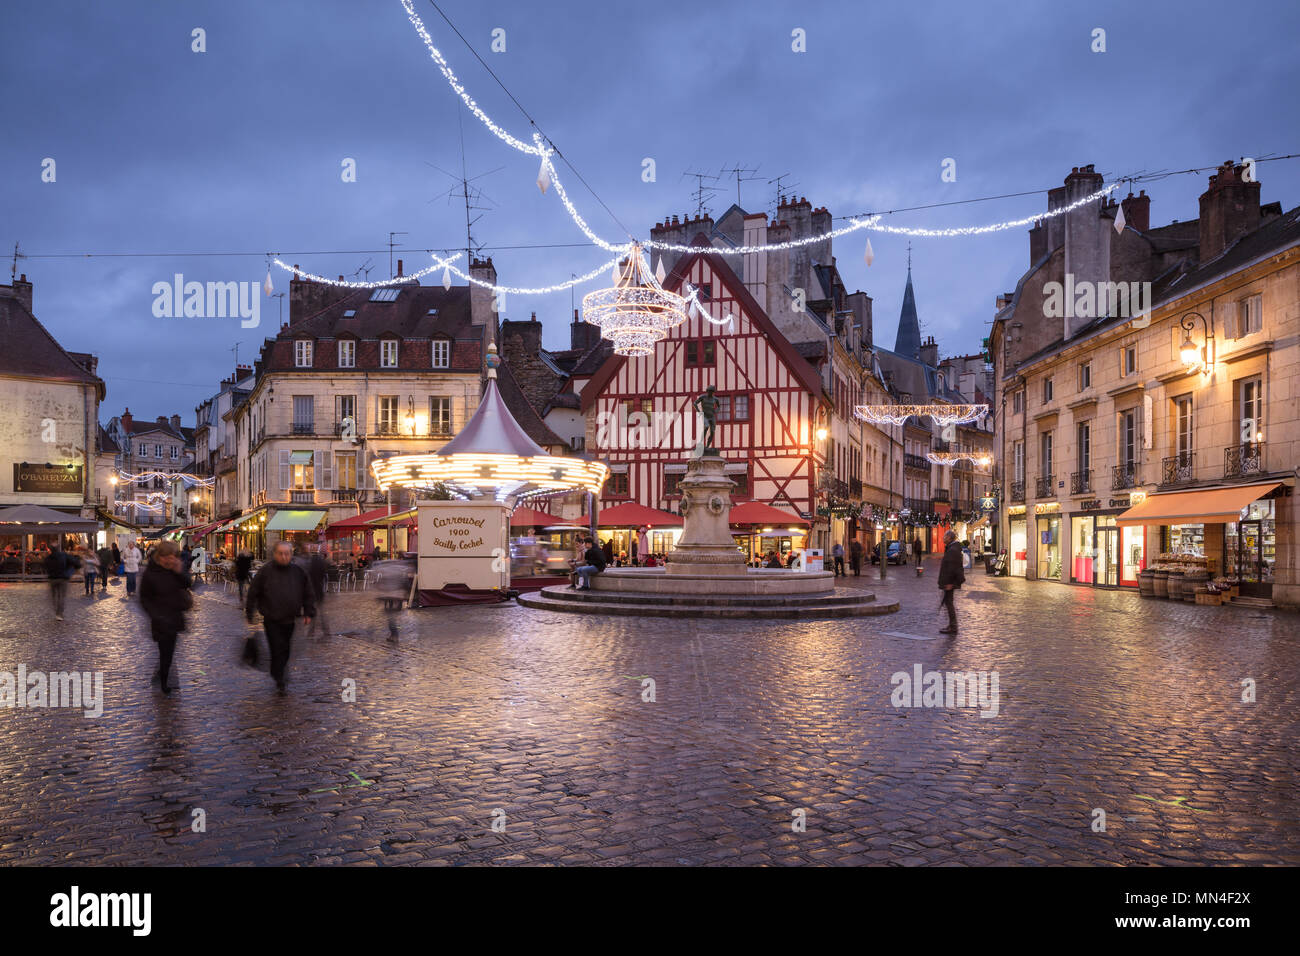 Posizionare Froncois scortese al crepuscolo, Dijon, Bourgogne, Francia Foto Stock